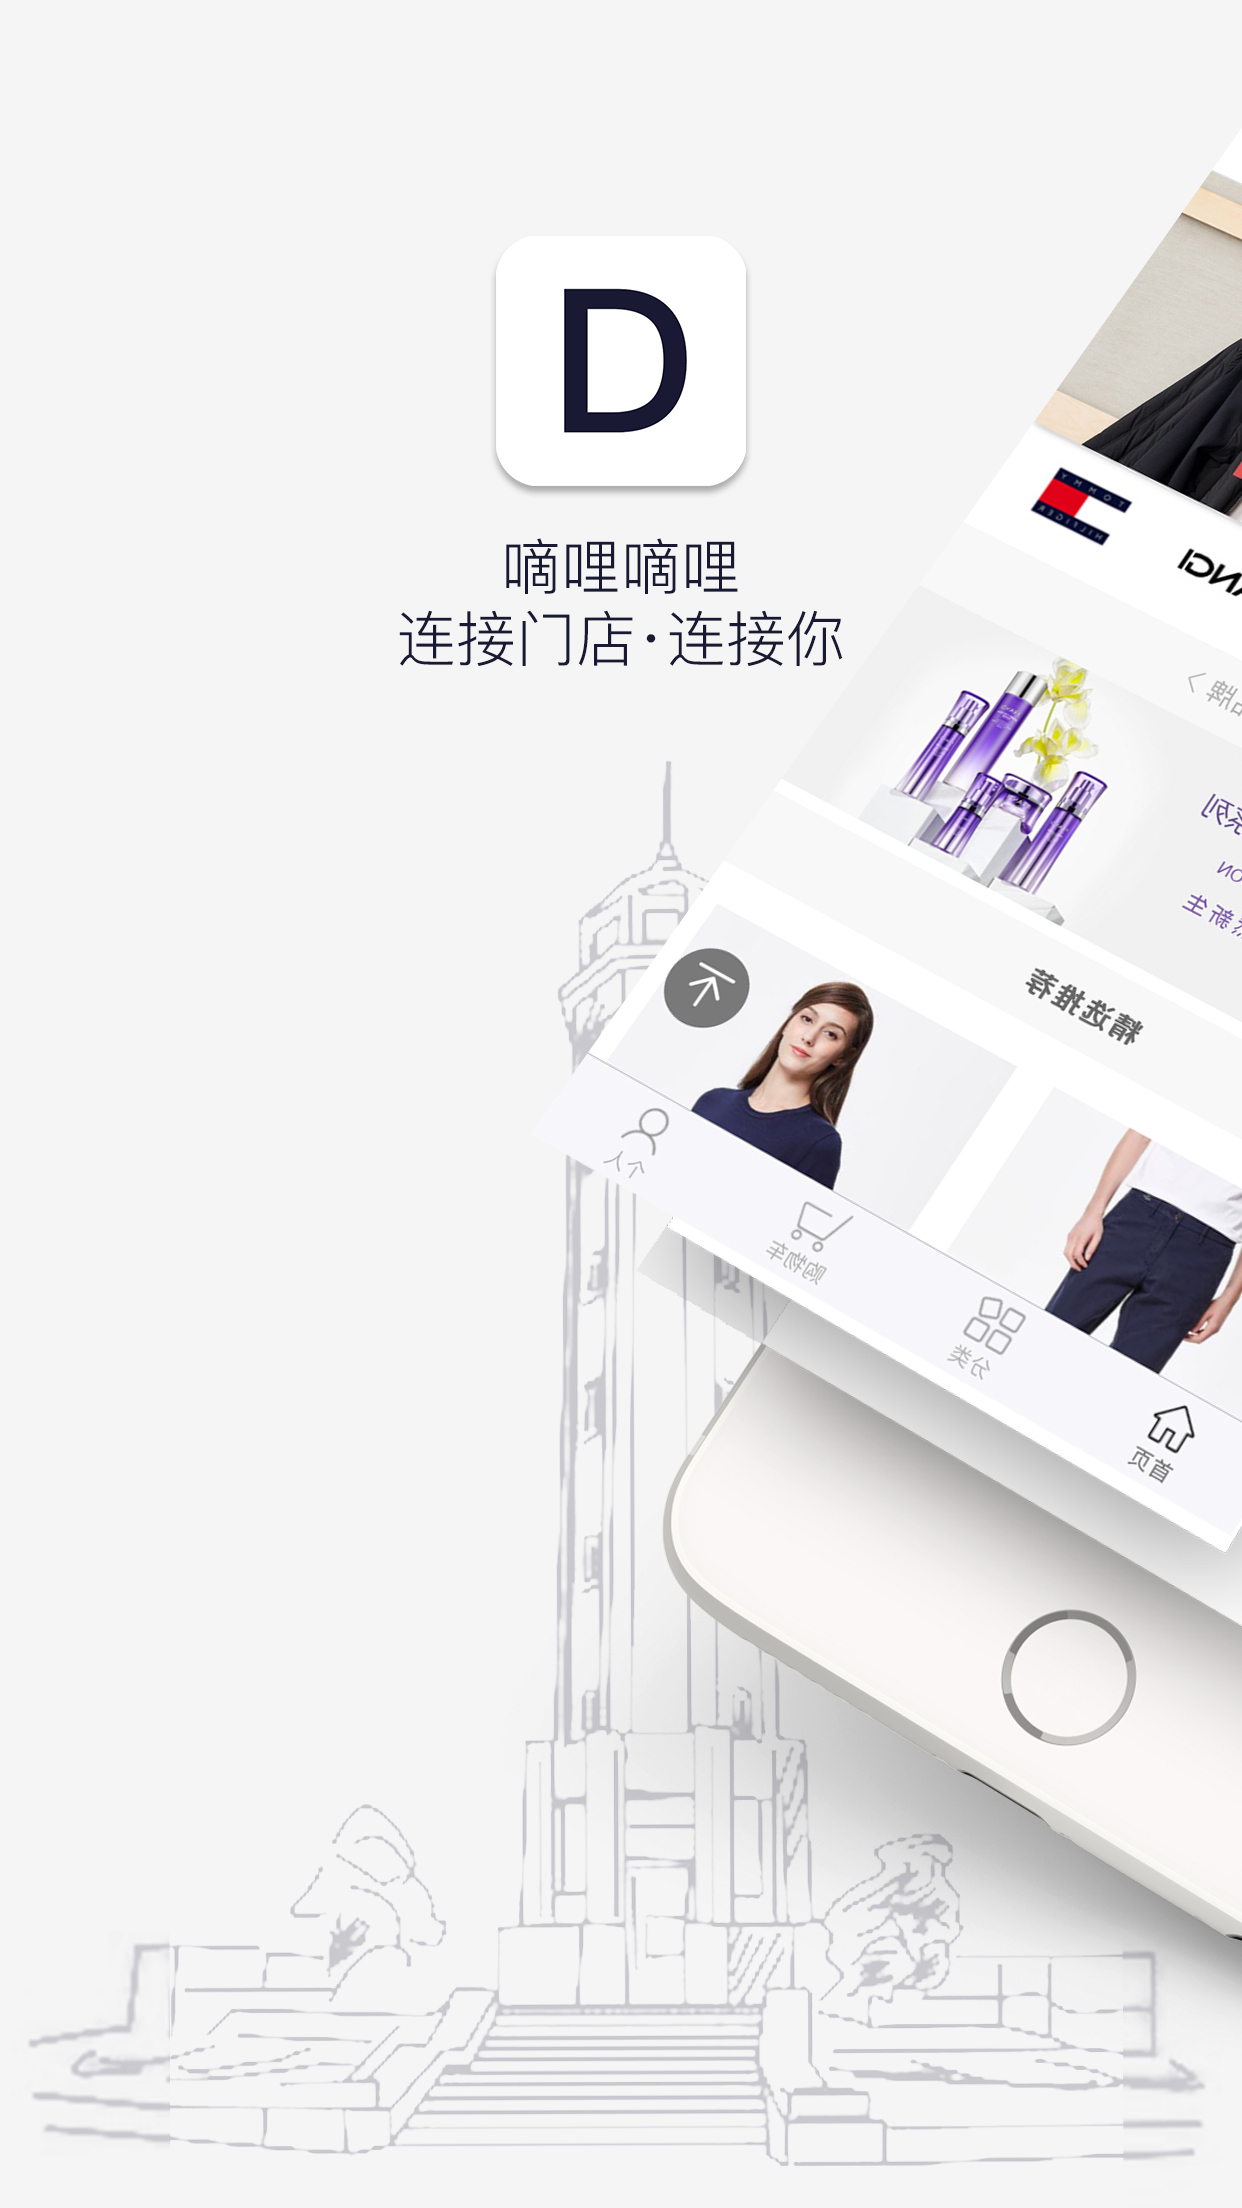 嘀哩嘀哩app官方下载最新版-嘀哩嘀哩手机版下载V1.1.5